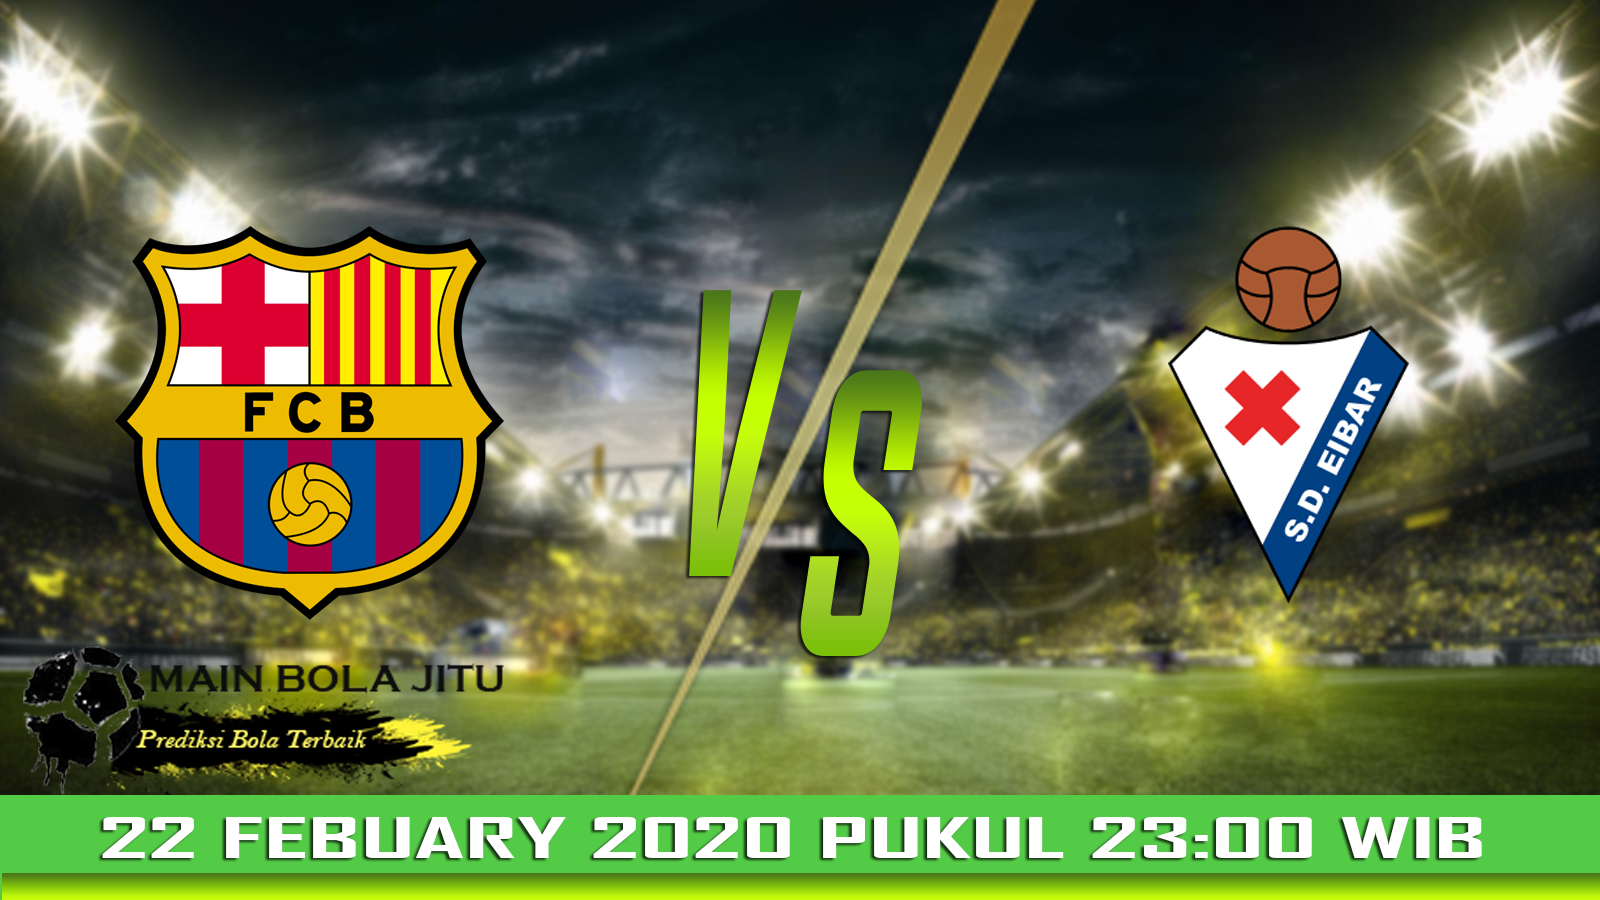 Prediksi Skor Barcelona vs Eibar tanggal 22-02-2020